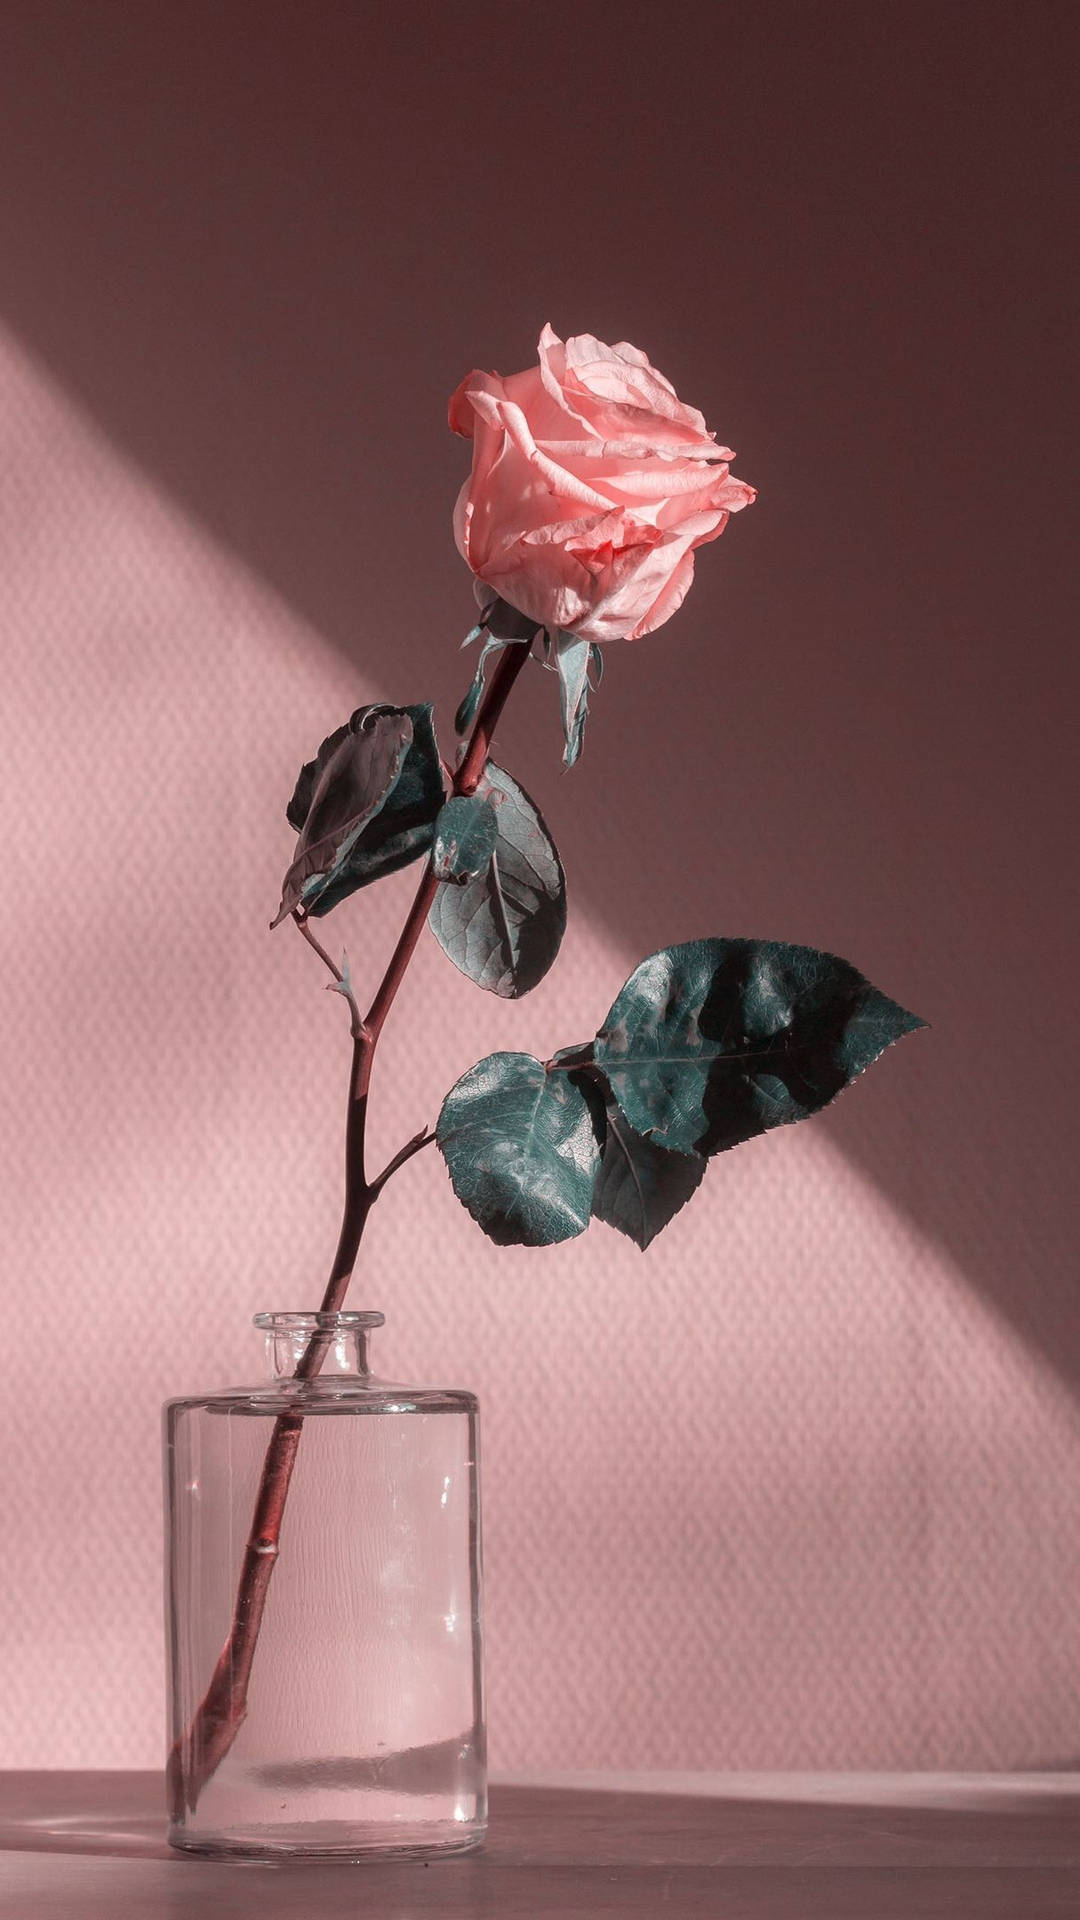 Pink Vintage Aesthetic Rose In A Jar Wallpaper